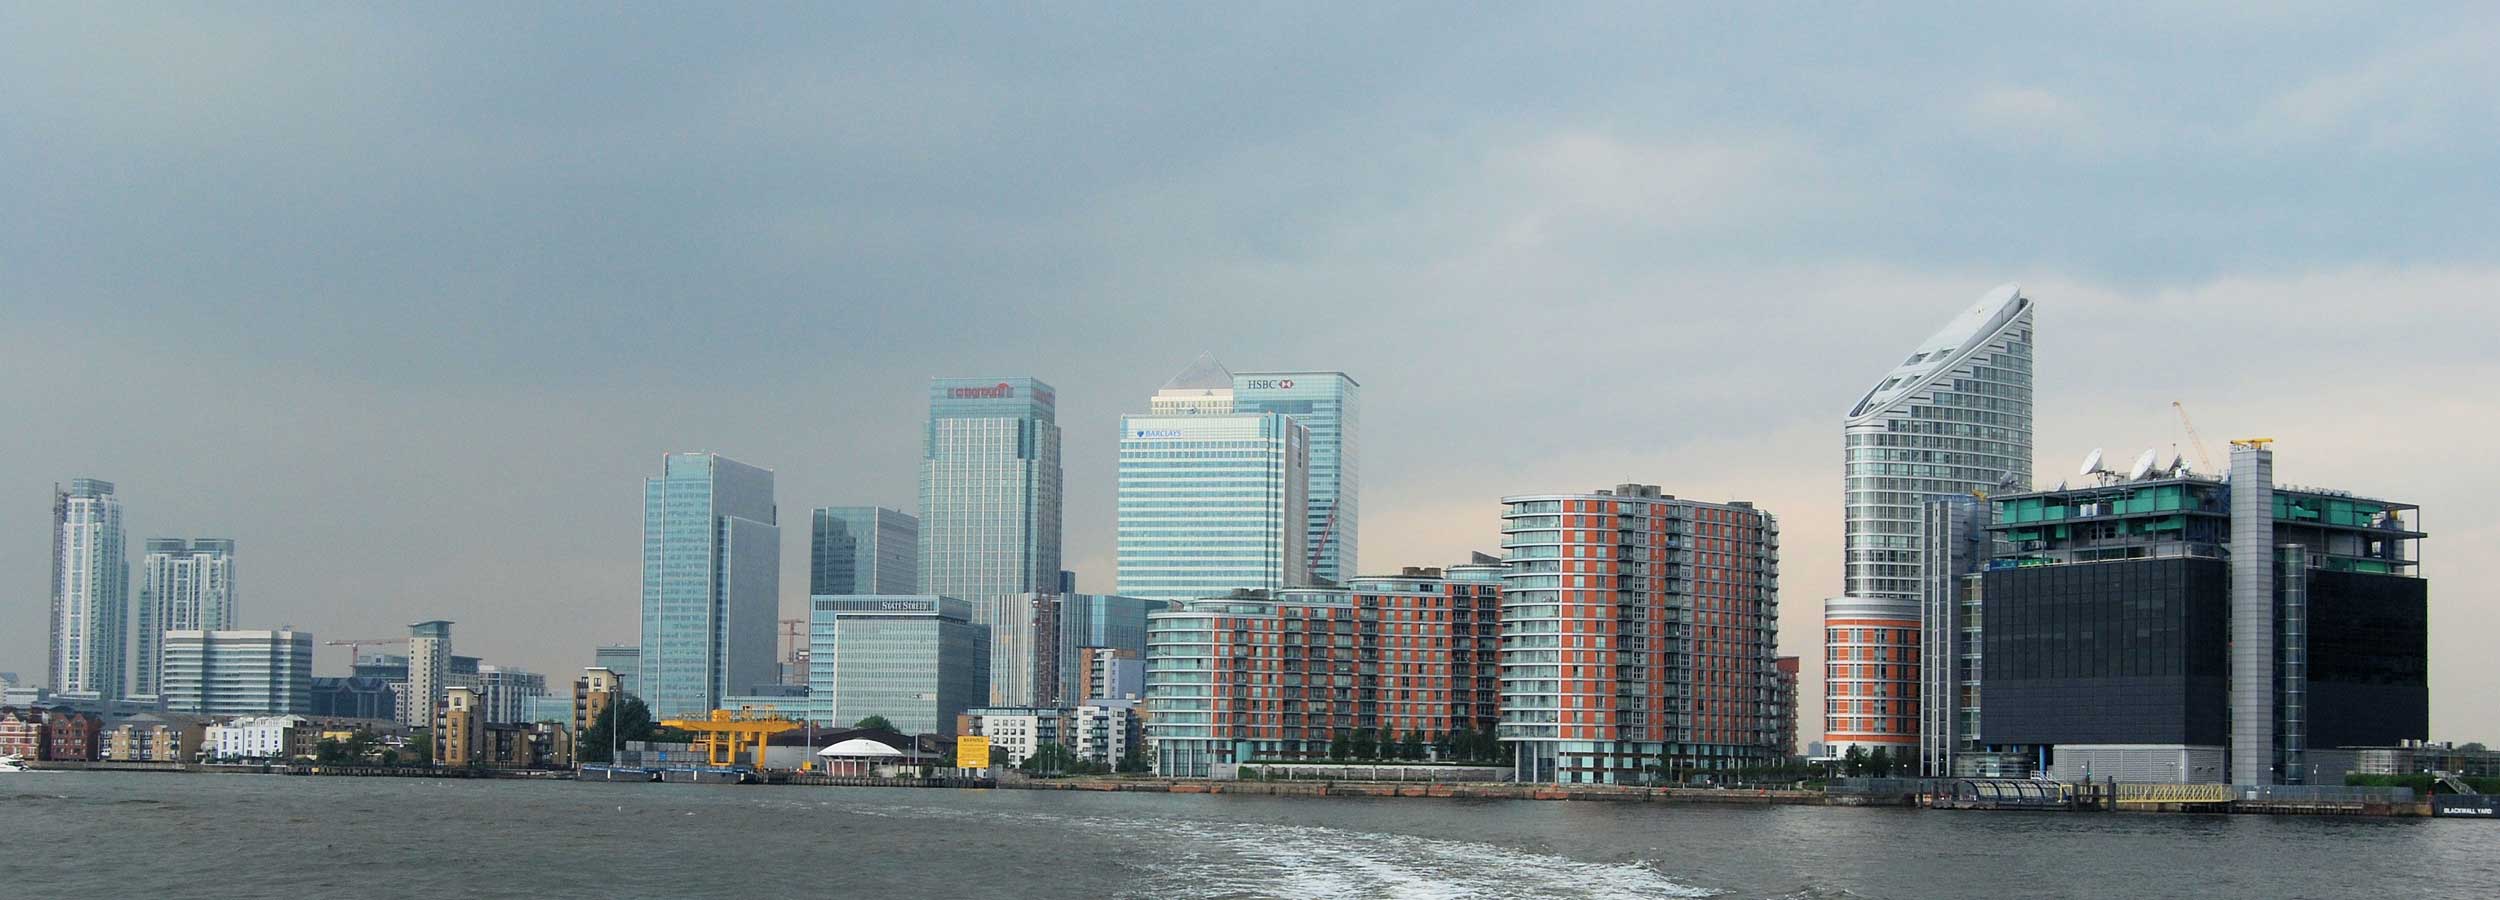 London River Thames architecture for surveys